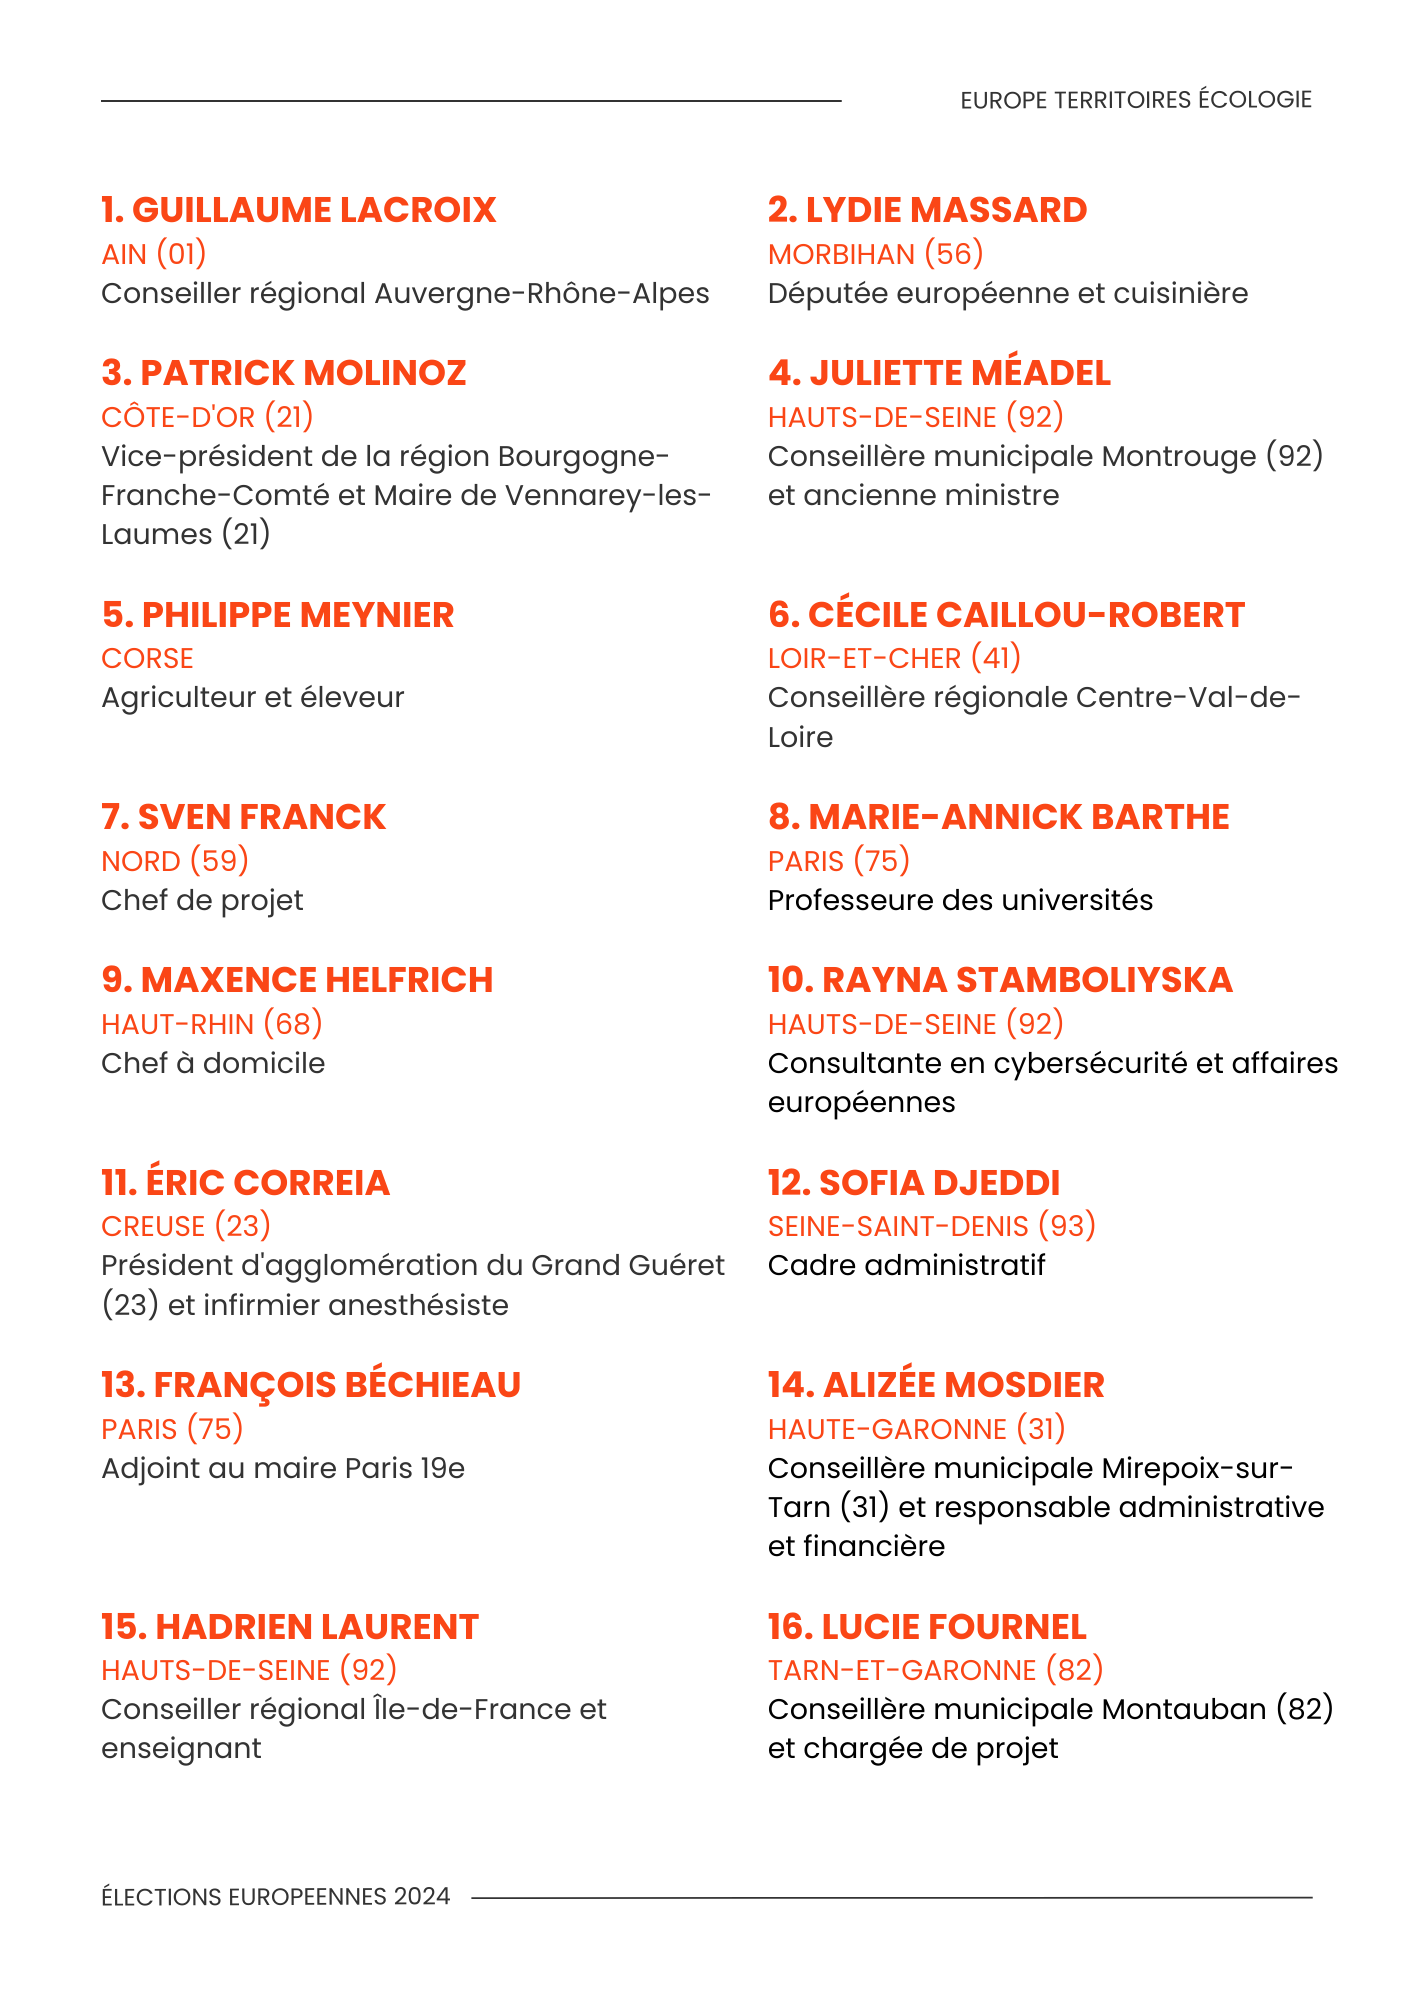 Les candidats et candidates 1 à 16 de la liste Europe Territoires Ecologie